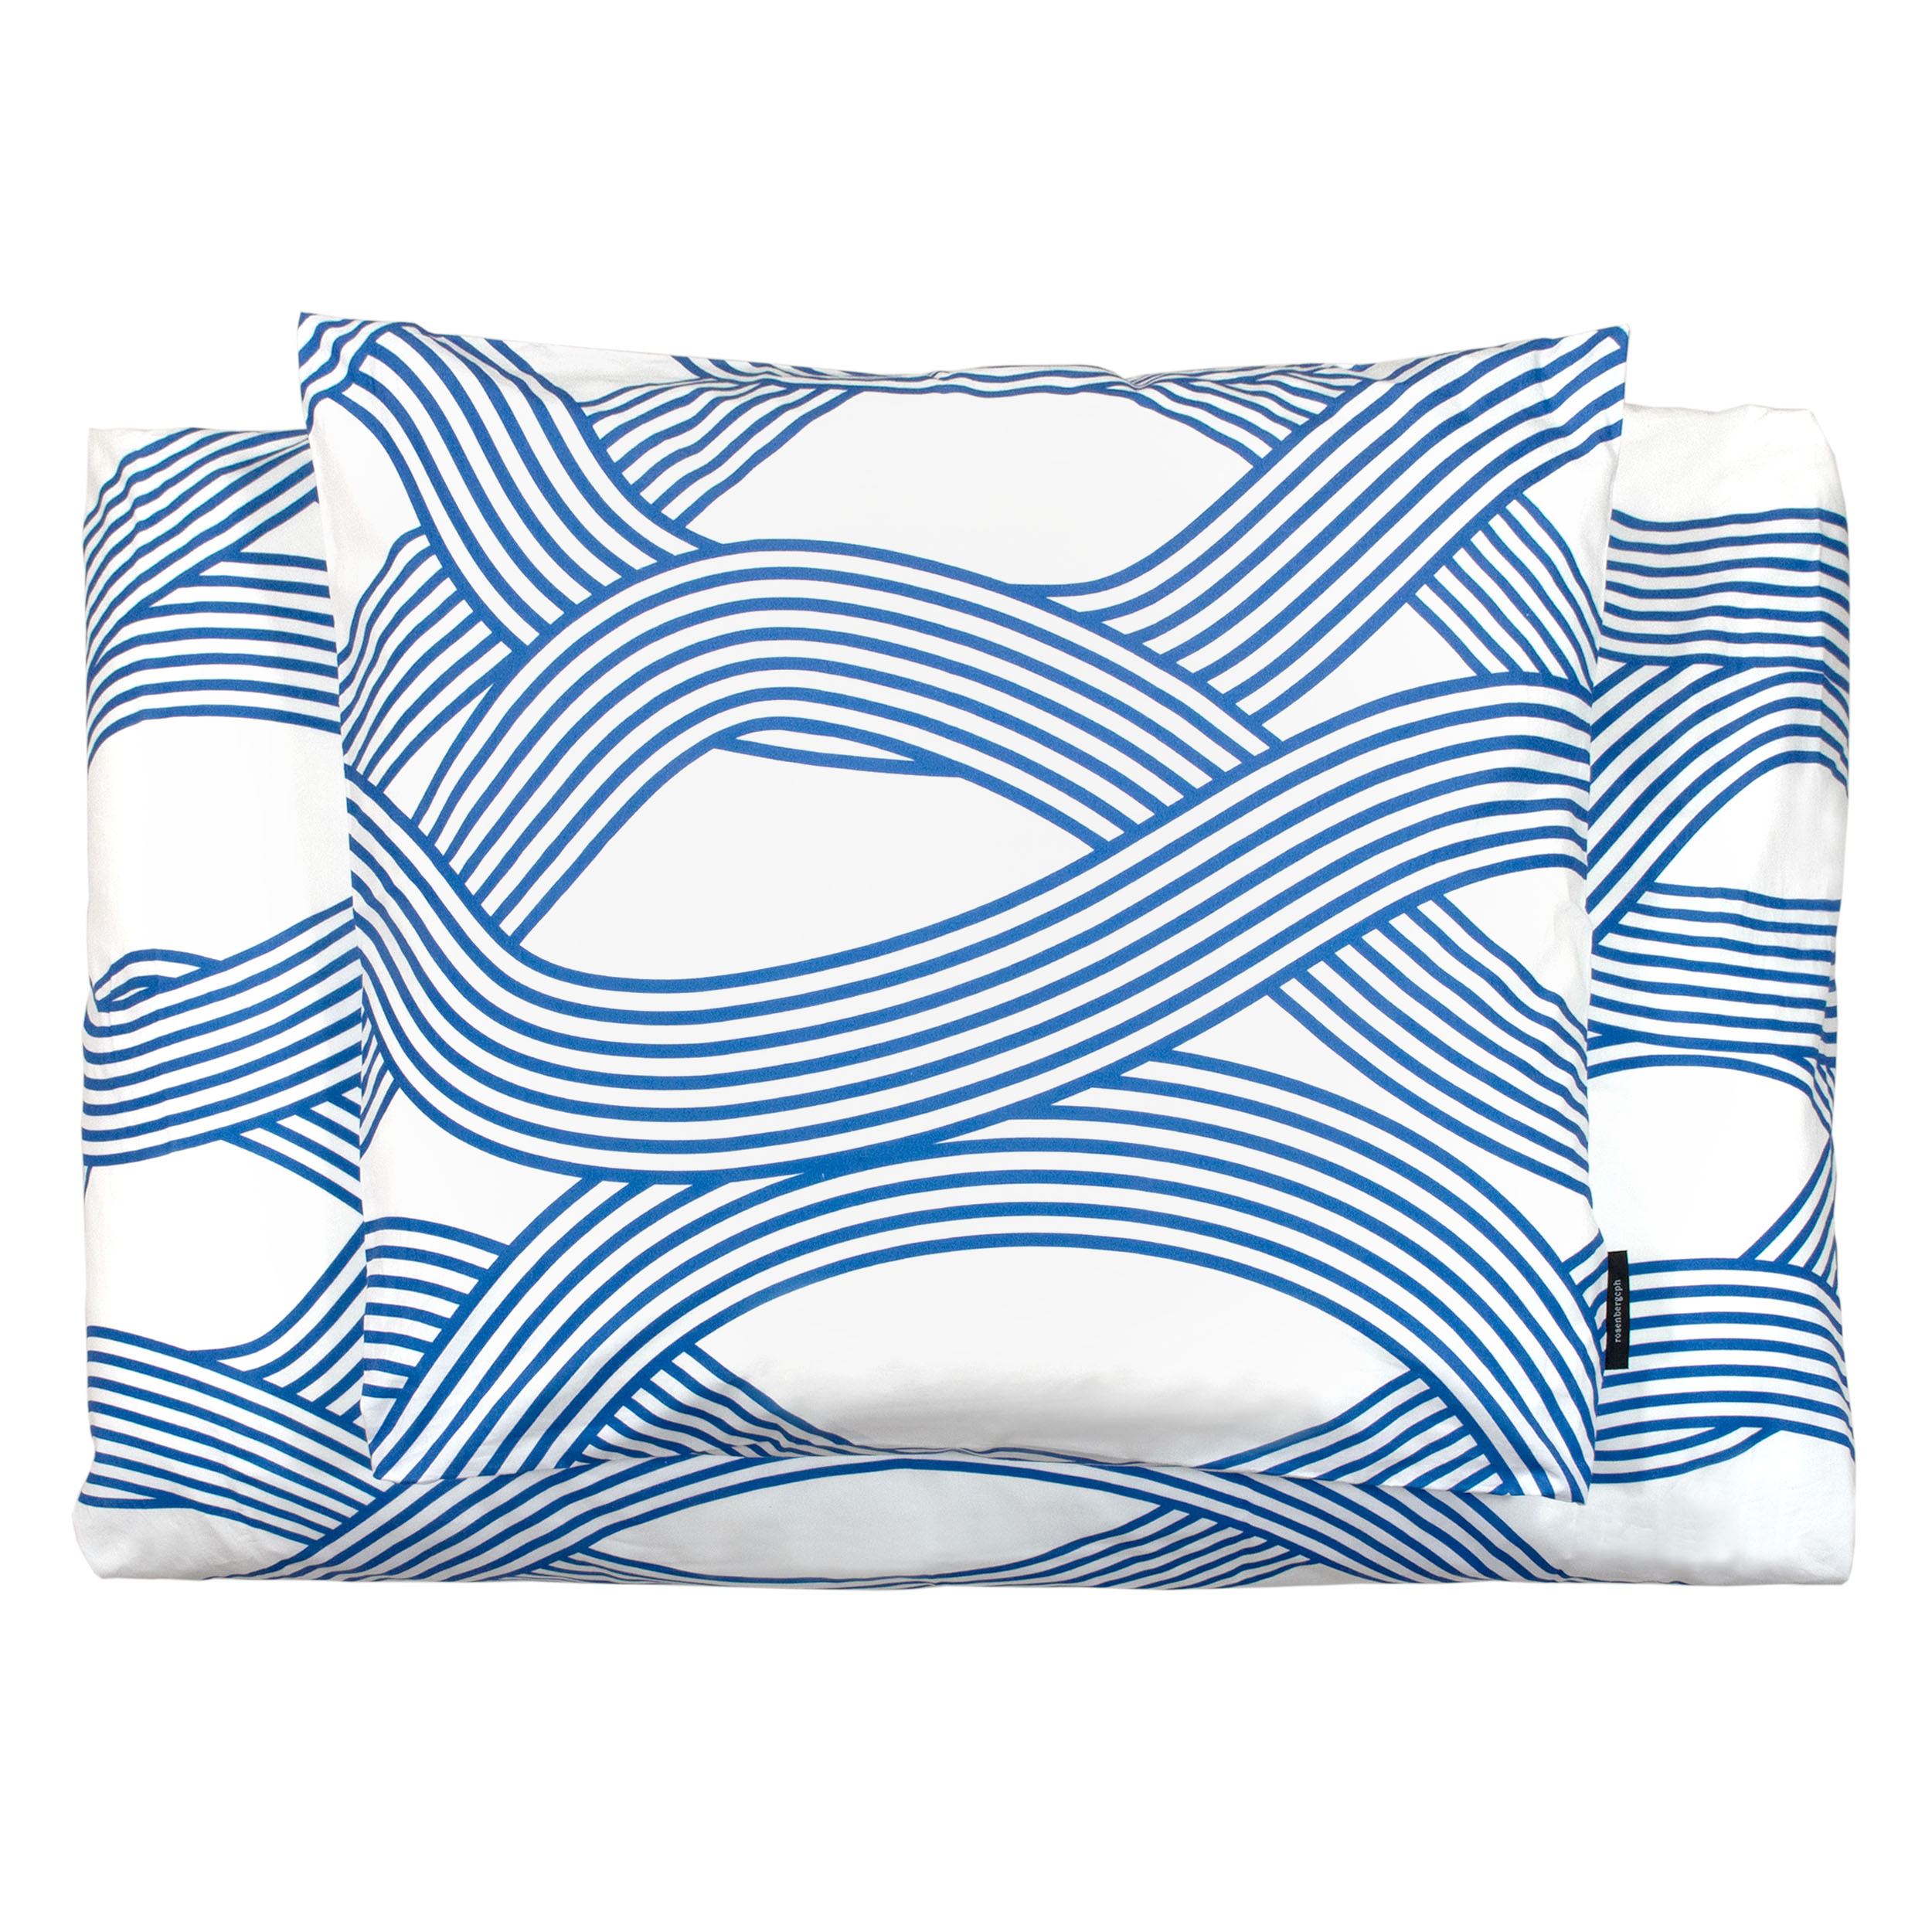 Ocean blue organic cotton bedlinen, design by Anne Rosenberg, RosenbergCph